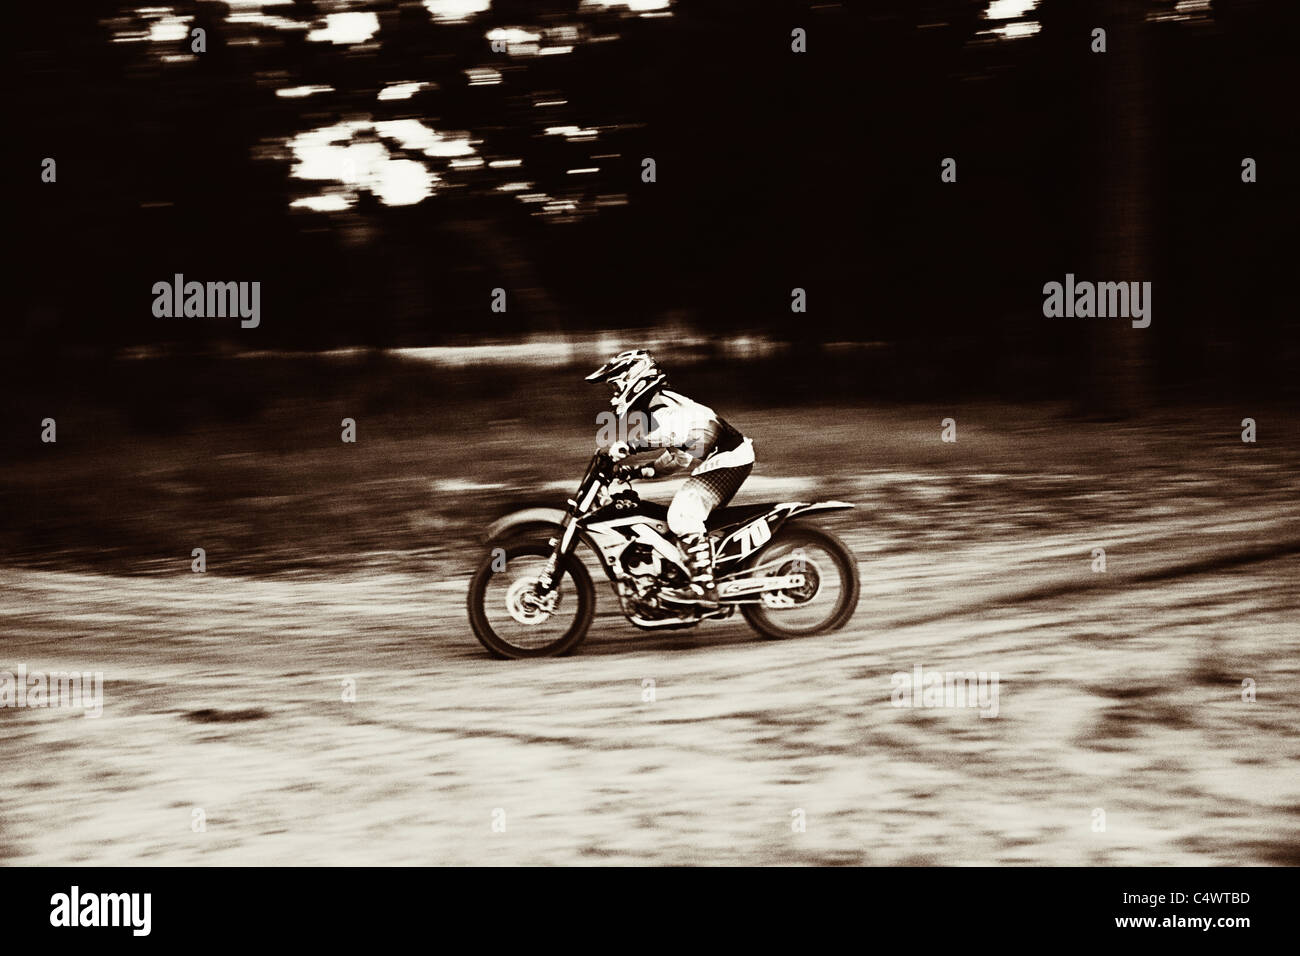 États-unis, Texas, Austin, traverser un motocycliste sur piste sablonneuse Banque D'Images